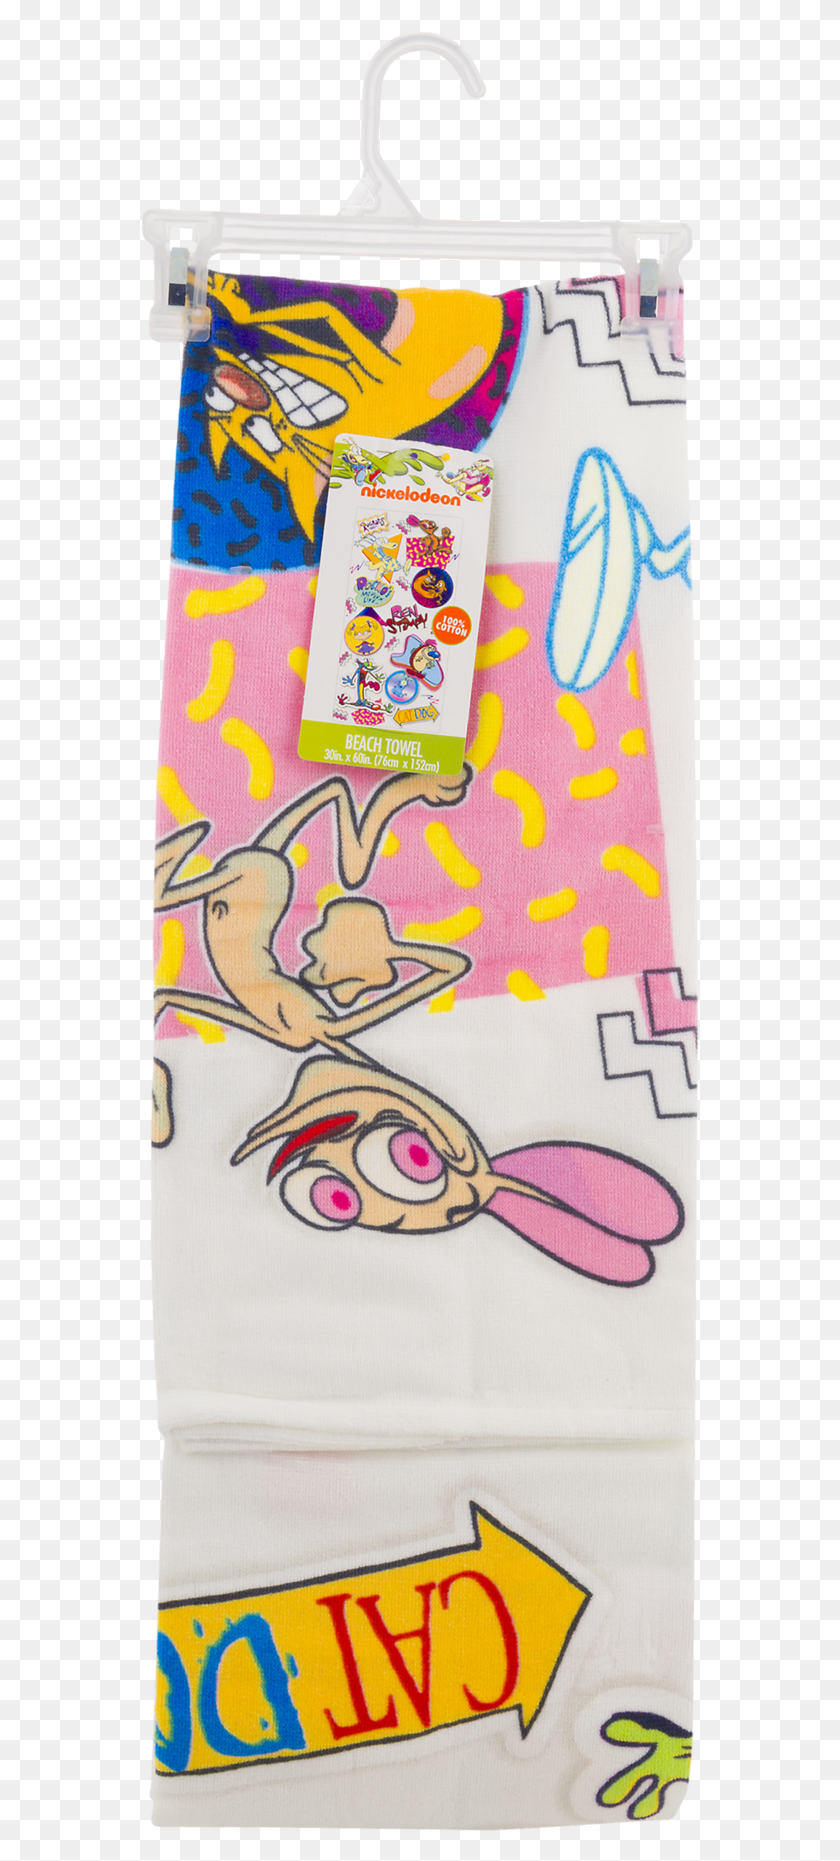 559x1801 Nickelodeon 100 Cotton Splat Mash Up Пляжное Полотенце Баннер, Узор, Аппликация, Вышивка Png Скачать